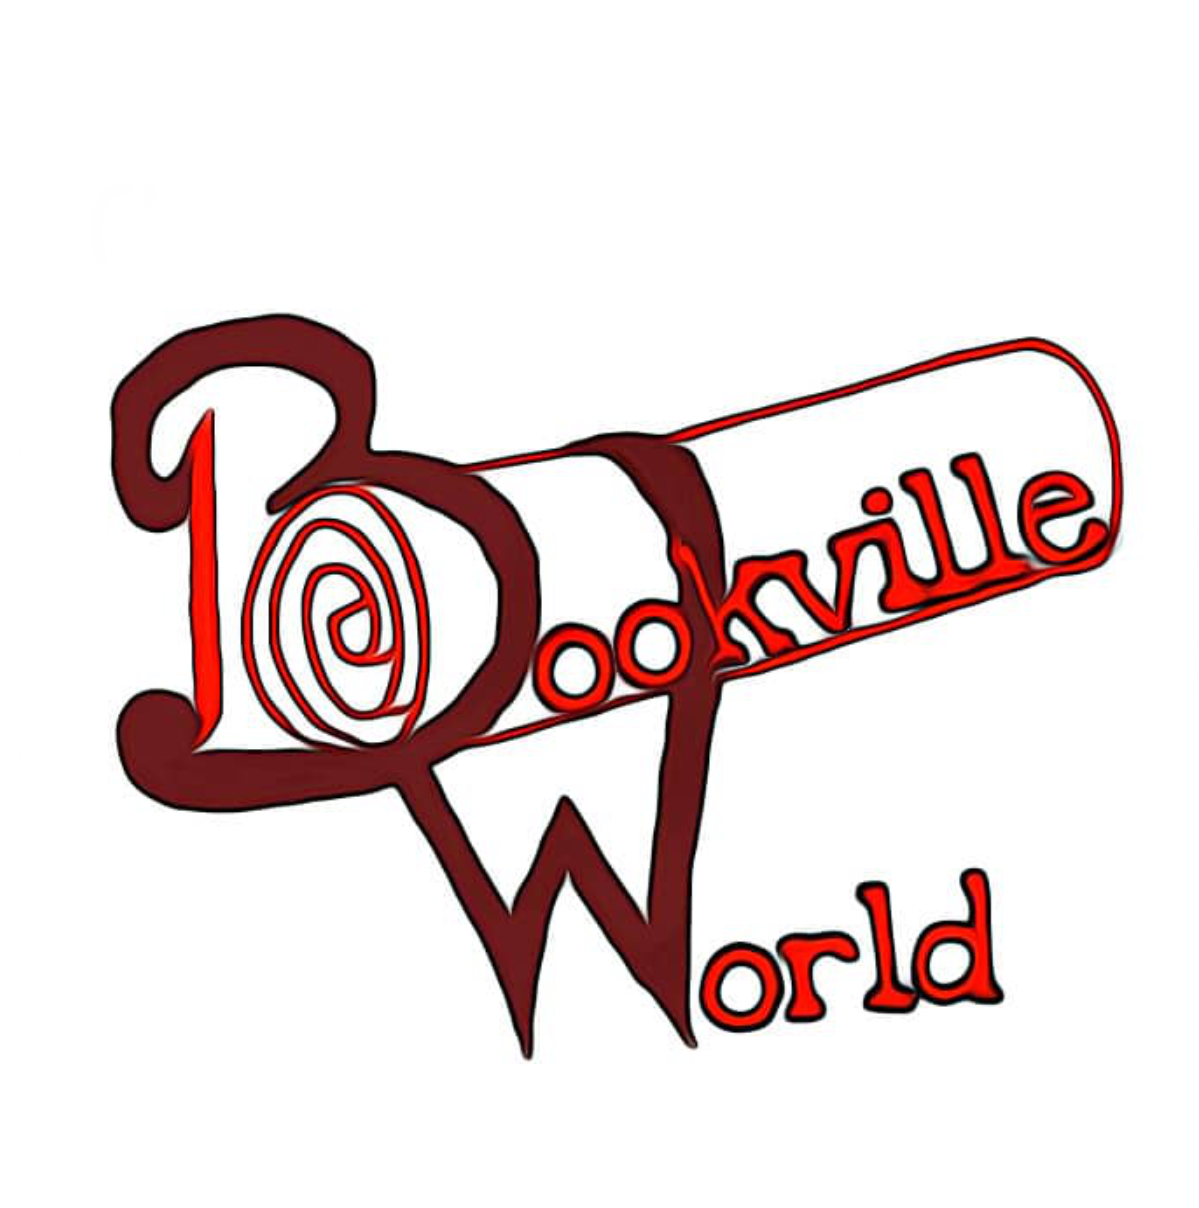 Bookville